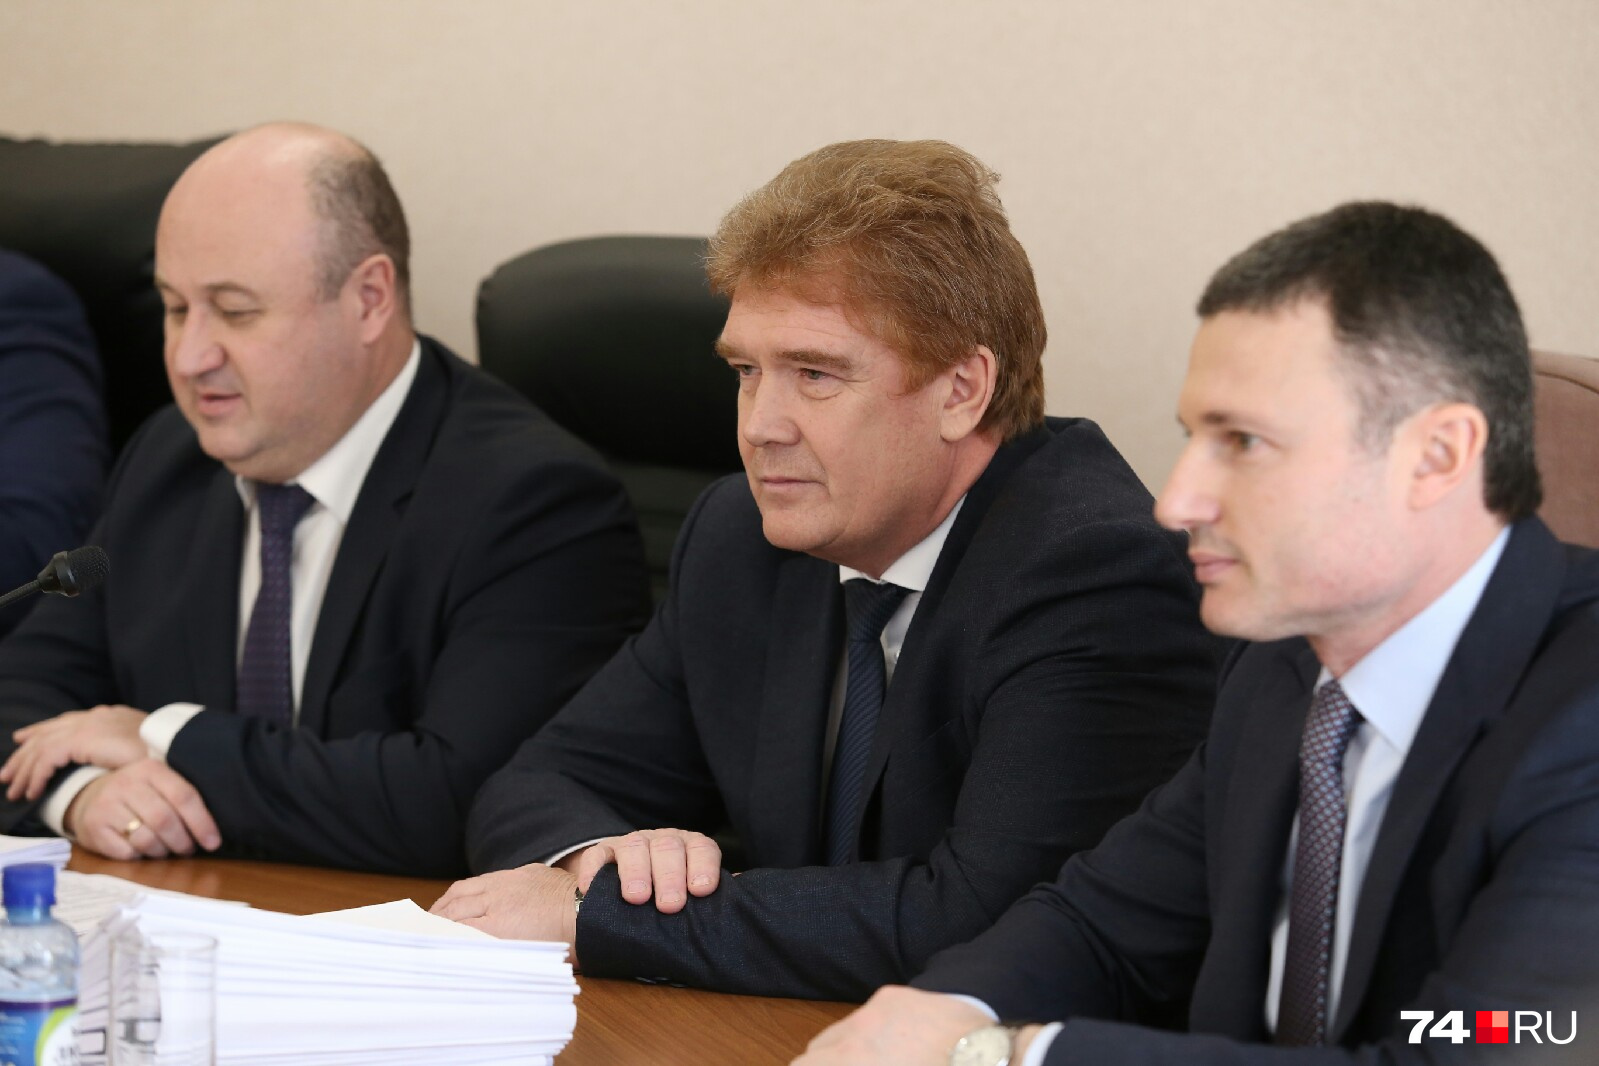 Владимир Елистратов (в центре) занял место в президиуме, других кандидатов не видно